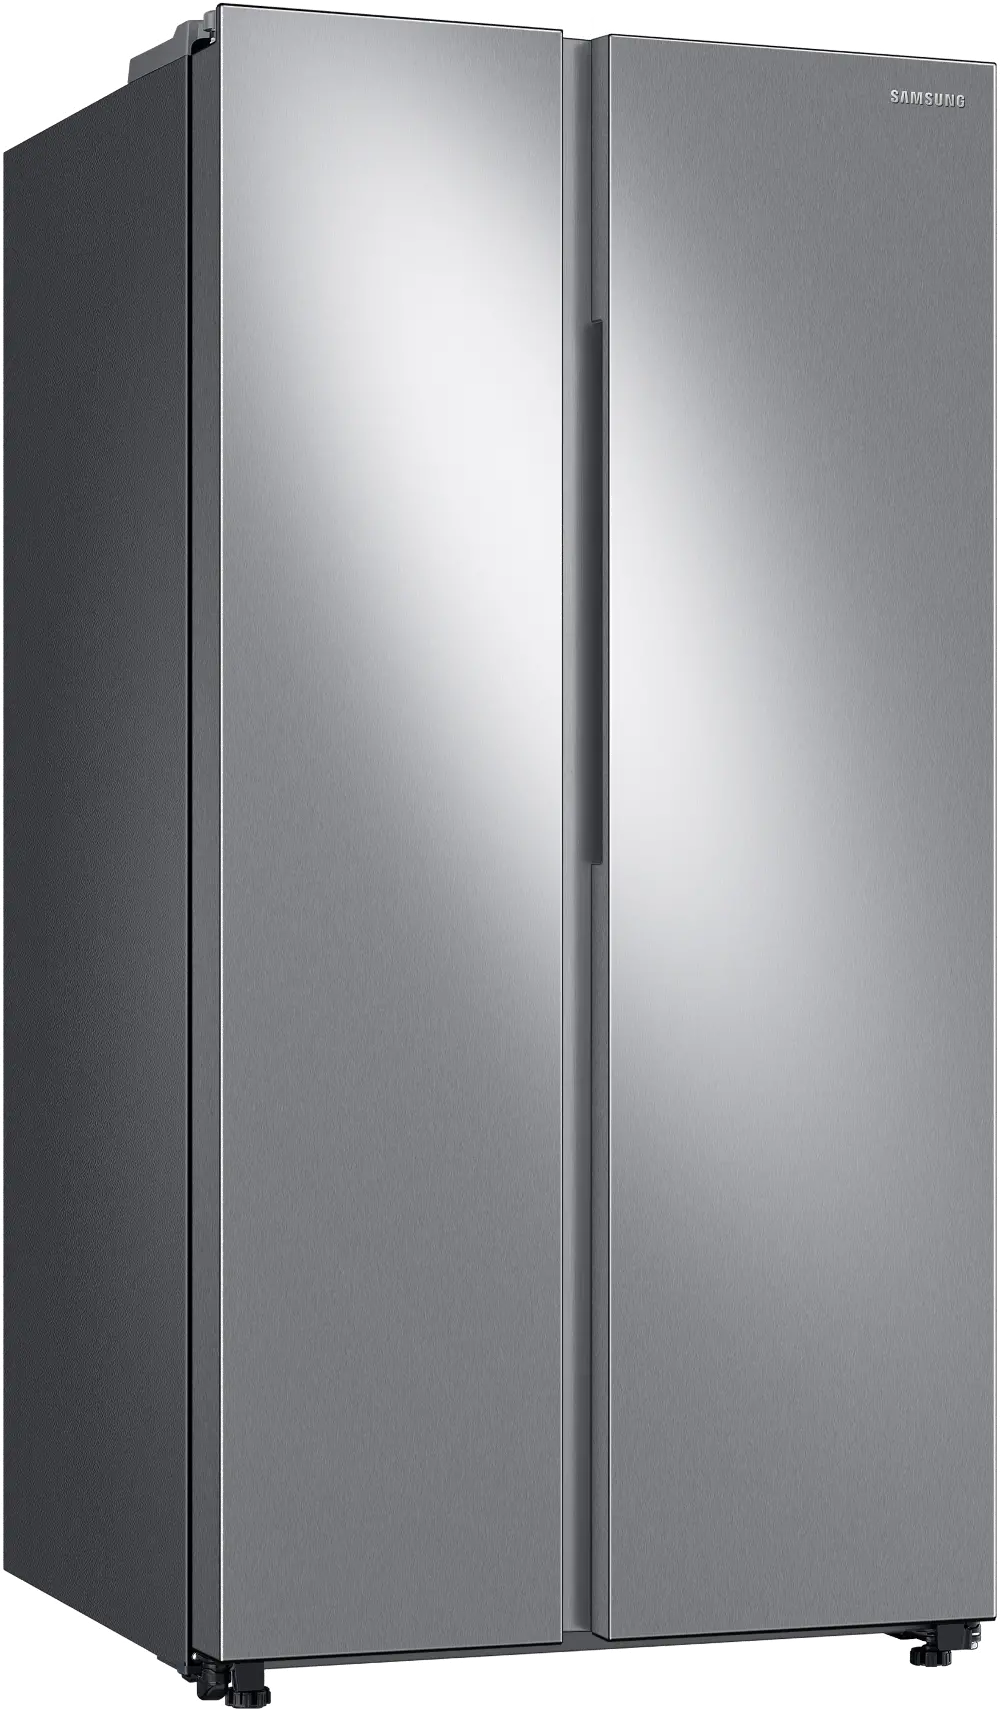 RS28A500ASR Samsung 28 cu ft Side by Side Refrigerator - Fingerprint Resistant Stainless Steel-1